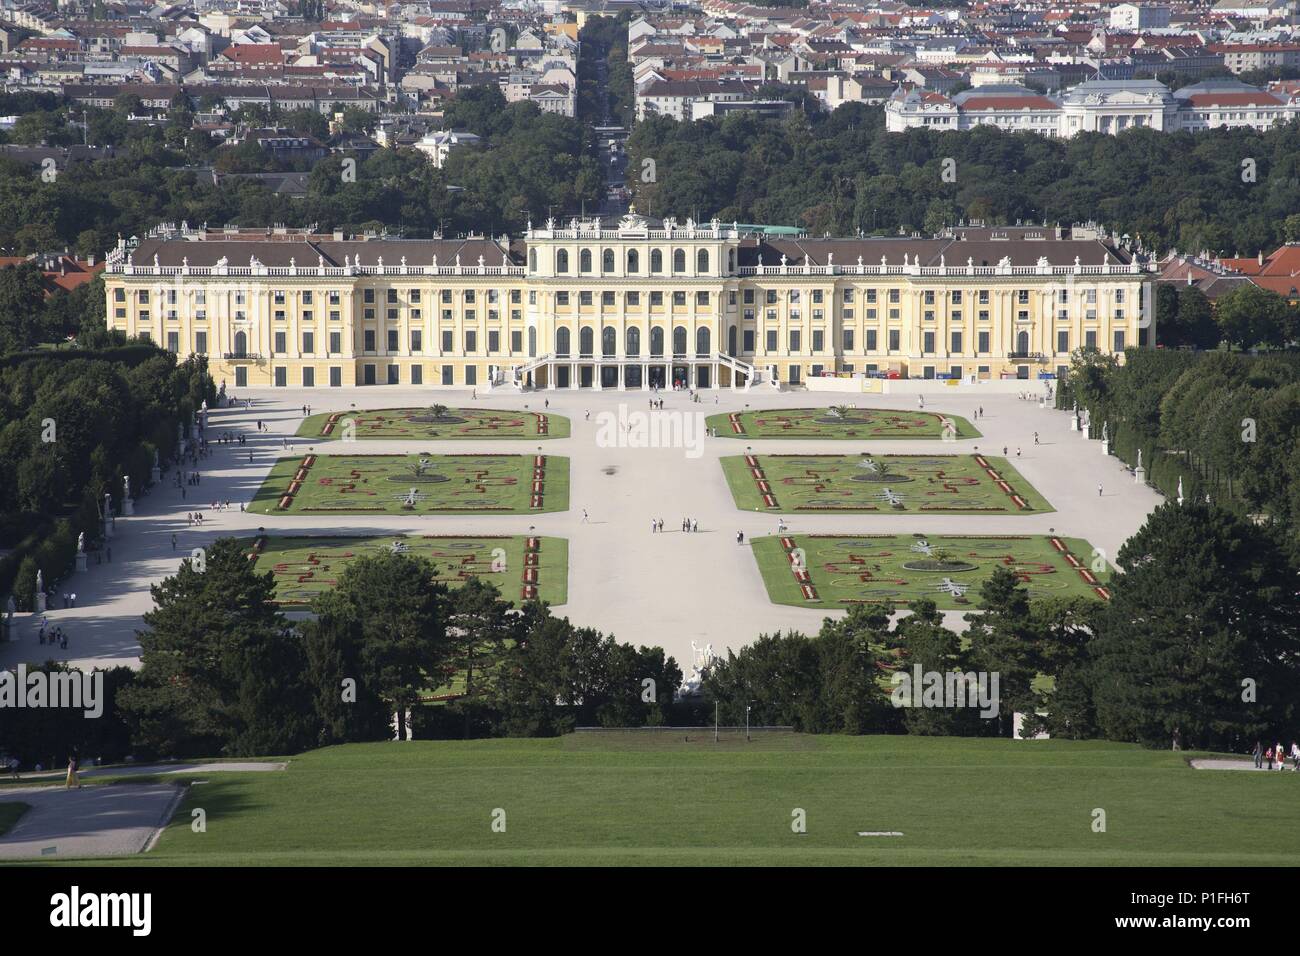 . Viena / Wien; Schönbrunn: vista desde la 'Gloriette' o Pabellón a los jardines, Palacio imperial y ciudad. Stock Photo